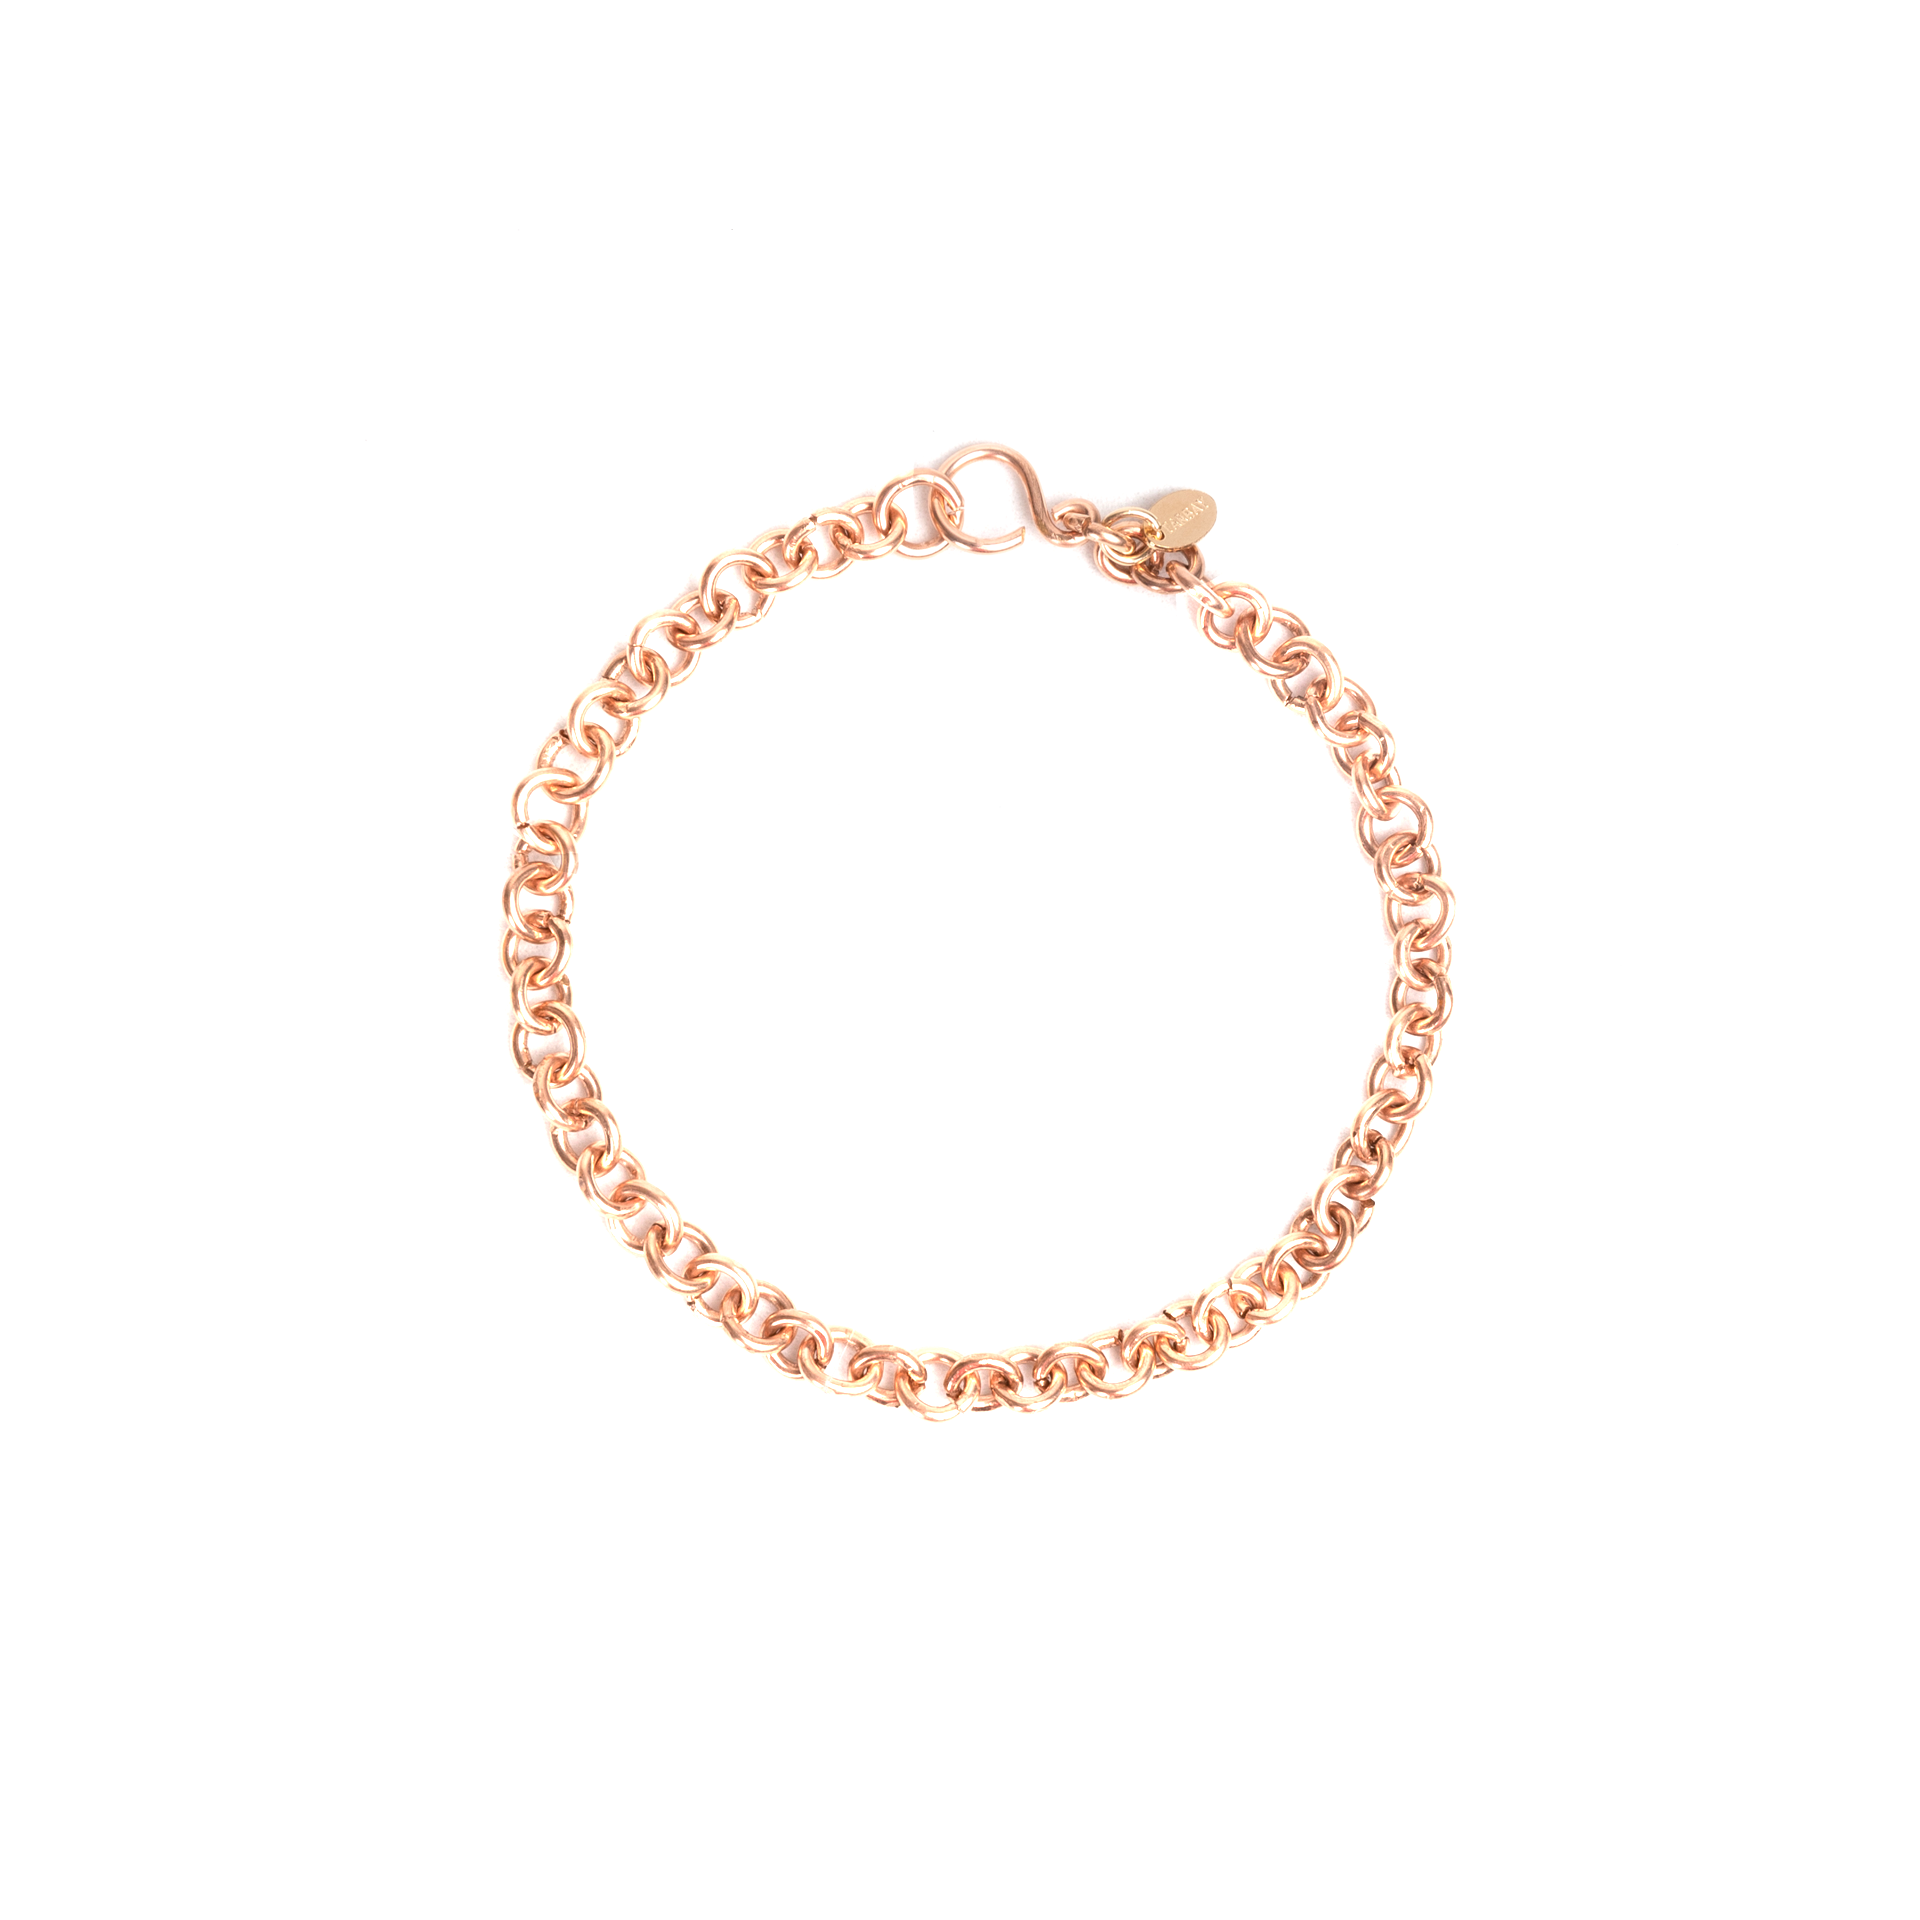 Tina Bracelet #3 - Rose Gold Bracelets TARBAY   